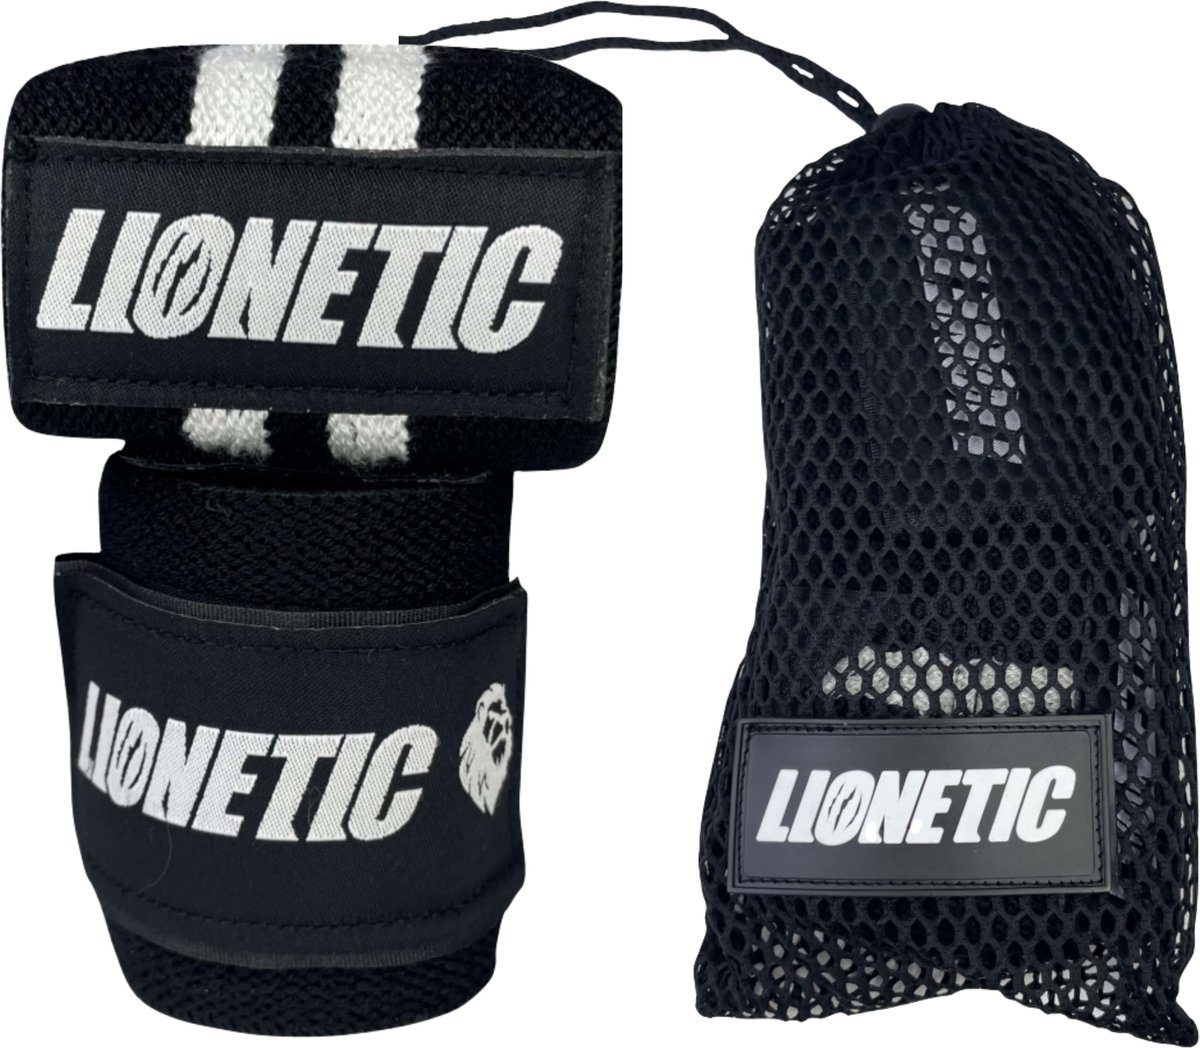 Lionetic Wrist Wraps - Wrist Banden - Krachttraining Accessoire - Bodybuilding/Powerlifting/Crossfit - 65cm Lang - Zwart/Wit